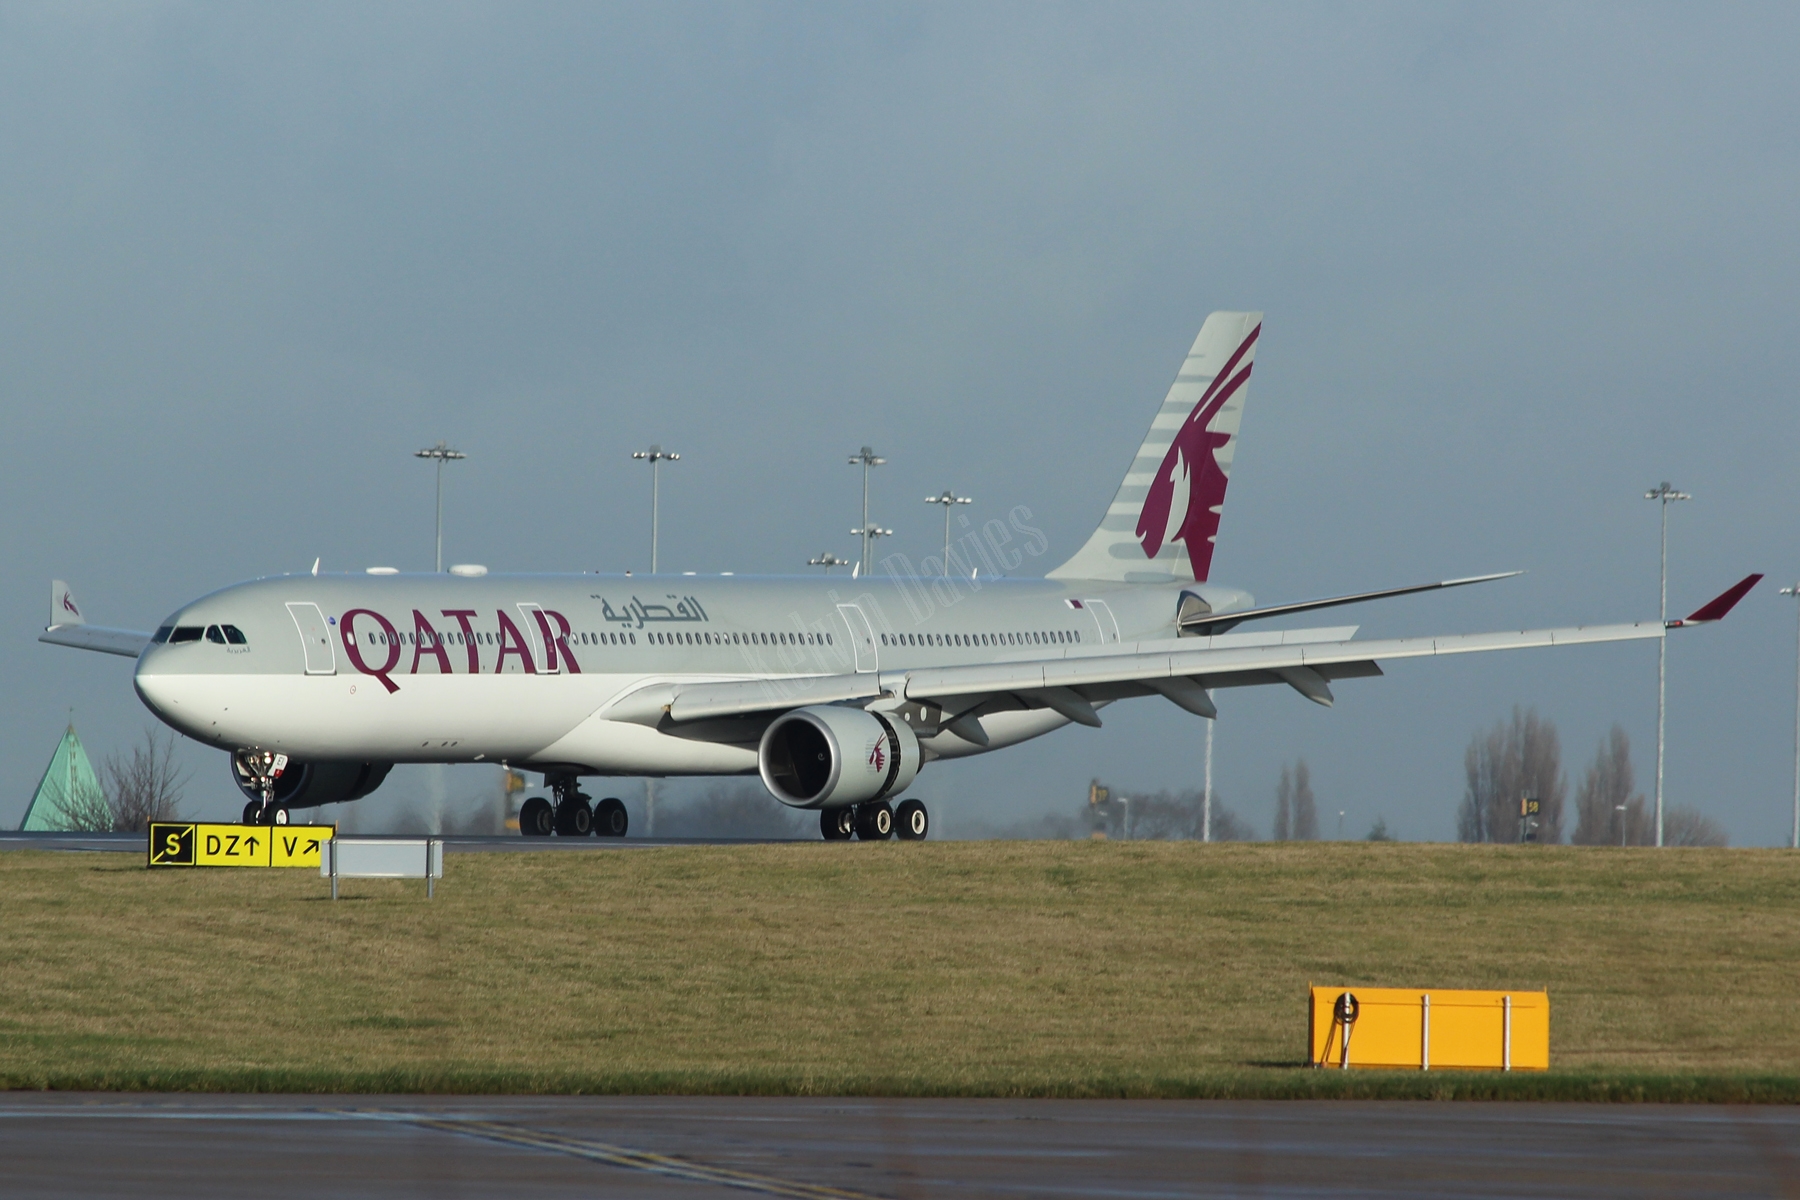 Qatar Airways A330 A7-AEI